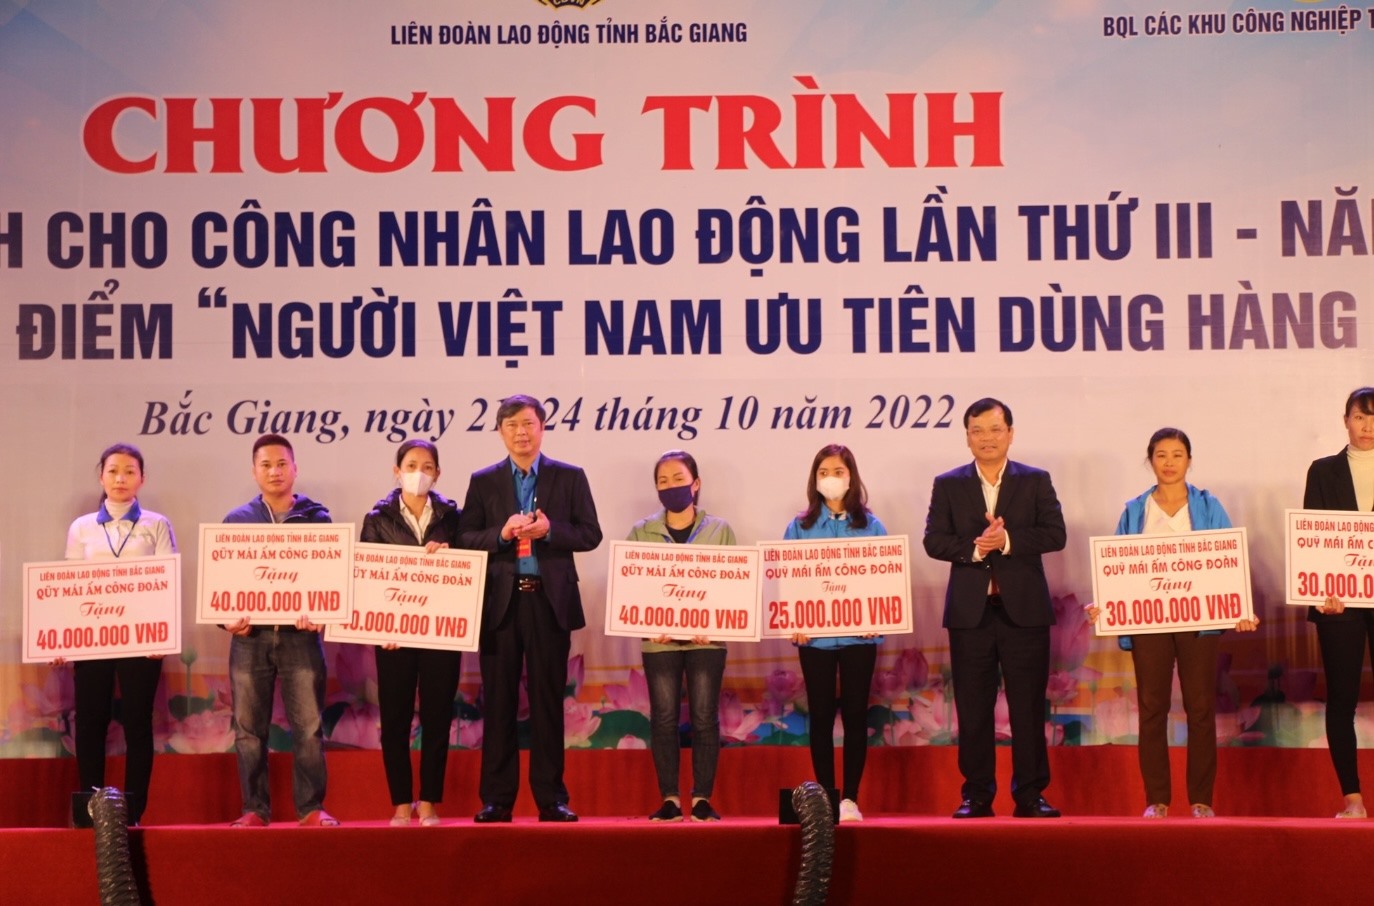 Lãnh đạo Uỷ ban nhân dân tỉnh và Liên đoàn Lao động tỉnh Bắc Giang trao hỗ trợ xây nhà Mái ấm Công đoàn tới công nhân lao động.